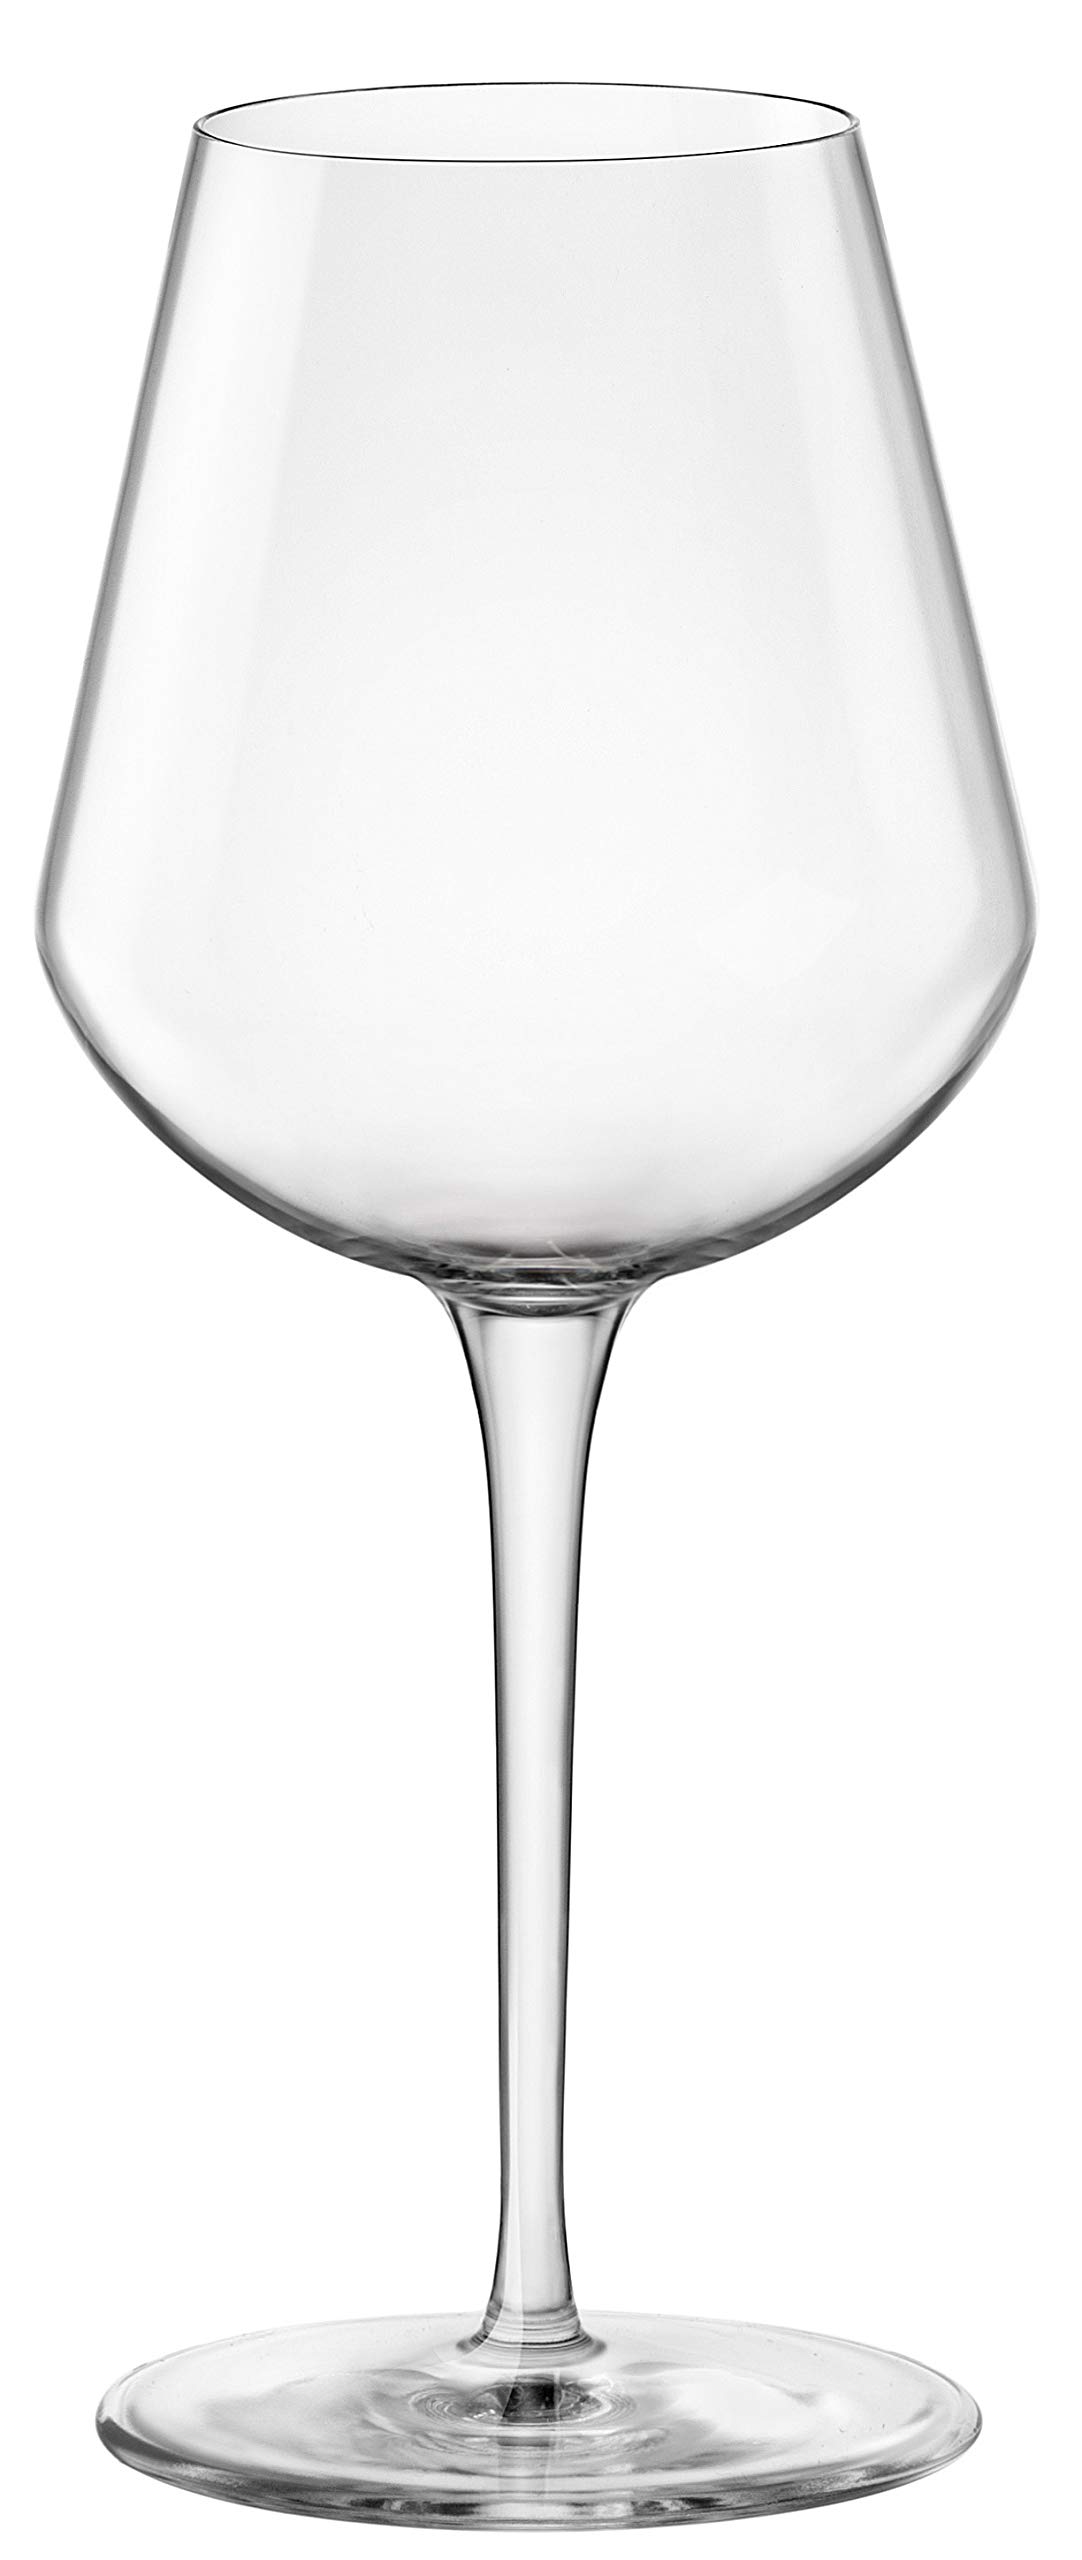 Bormioli Rocco InAlto Uno Glass, Medium, Set of 6, 16 oz, Clear